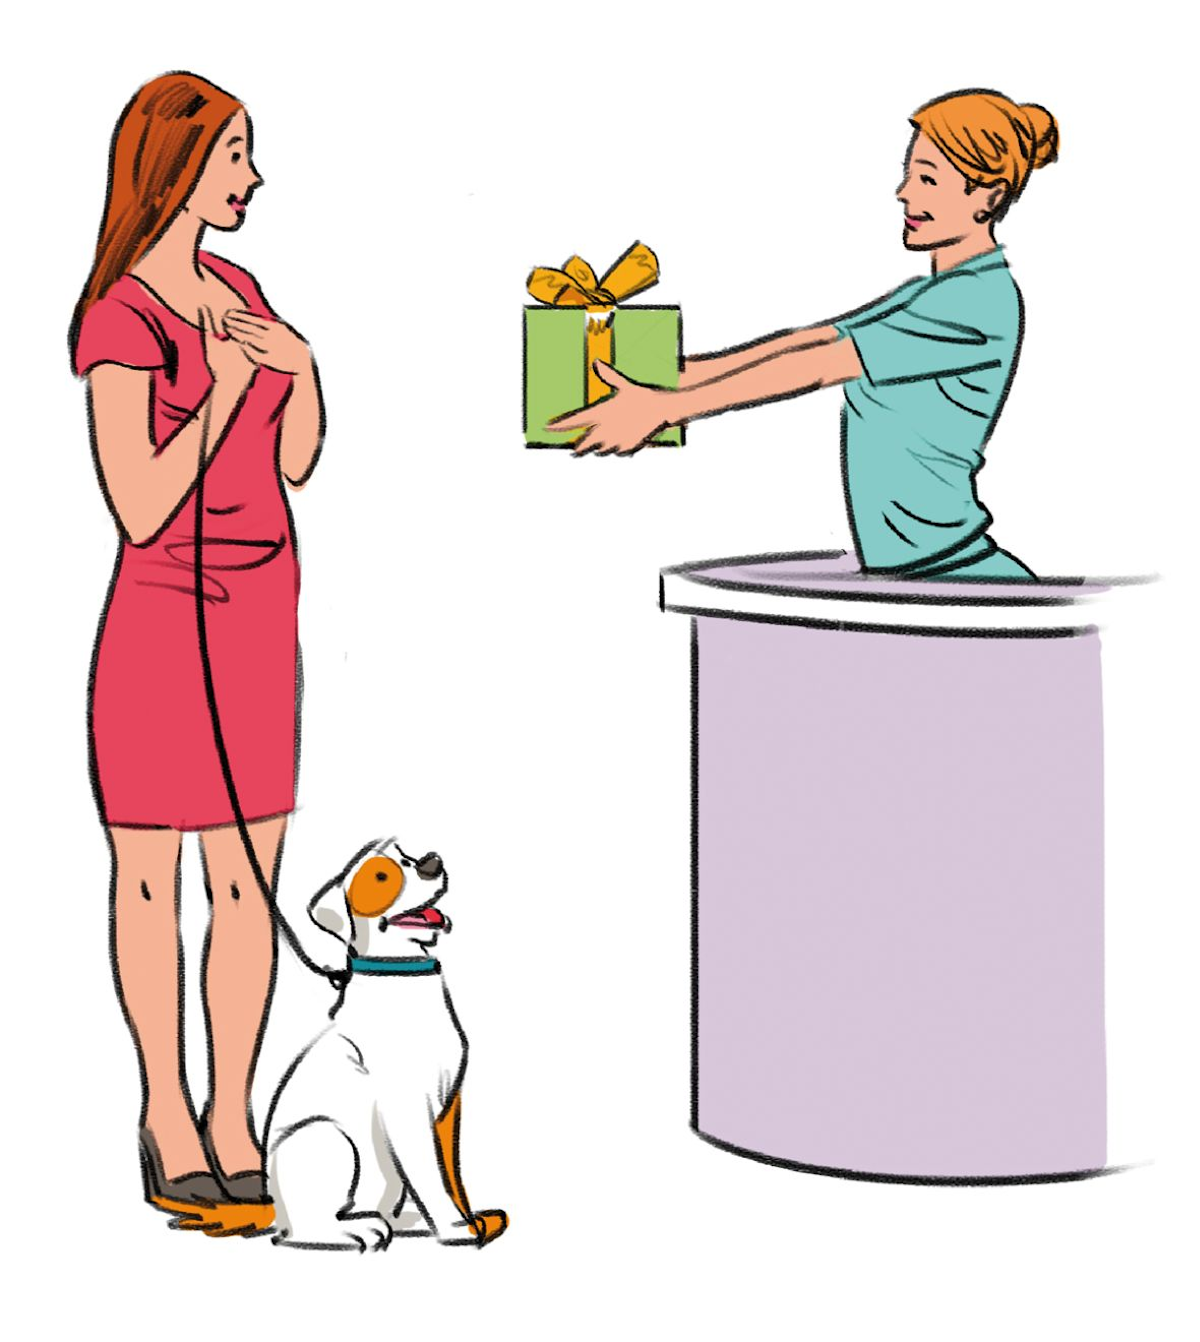 Figure 2. Surprendre vos clients avec des petits cadeaux inattendus est très important pour les mettre de bonne humeur et consolider la relation. © Manuel Fontègne